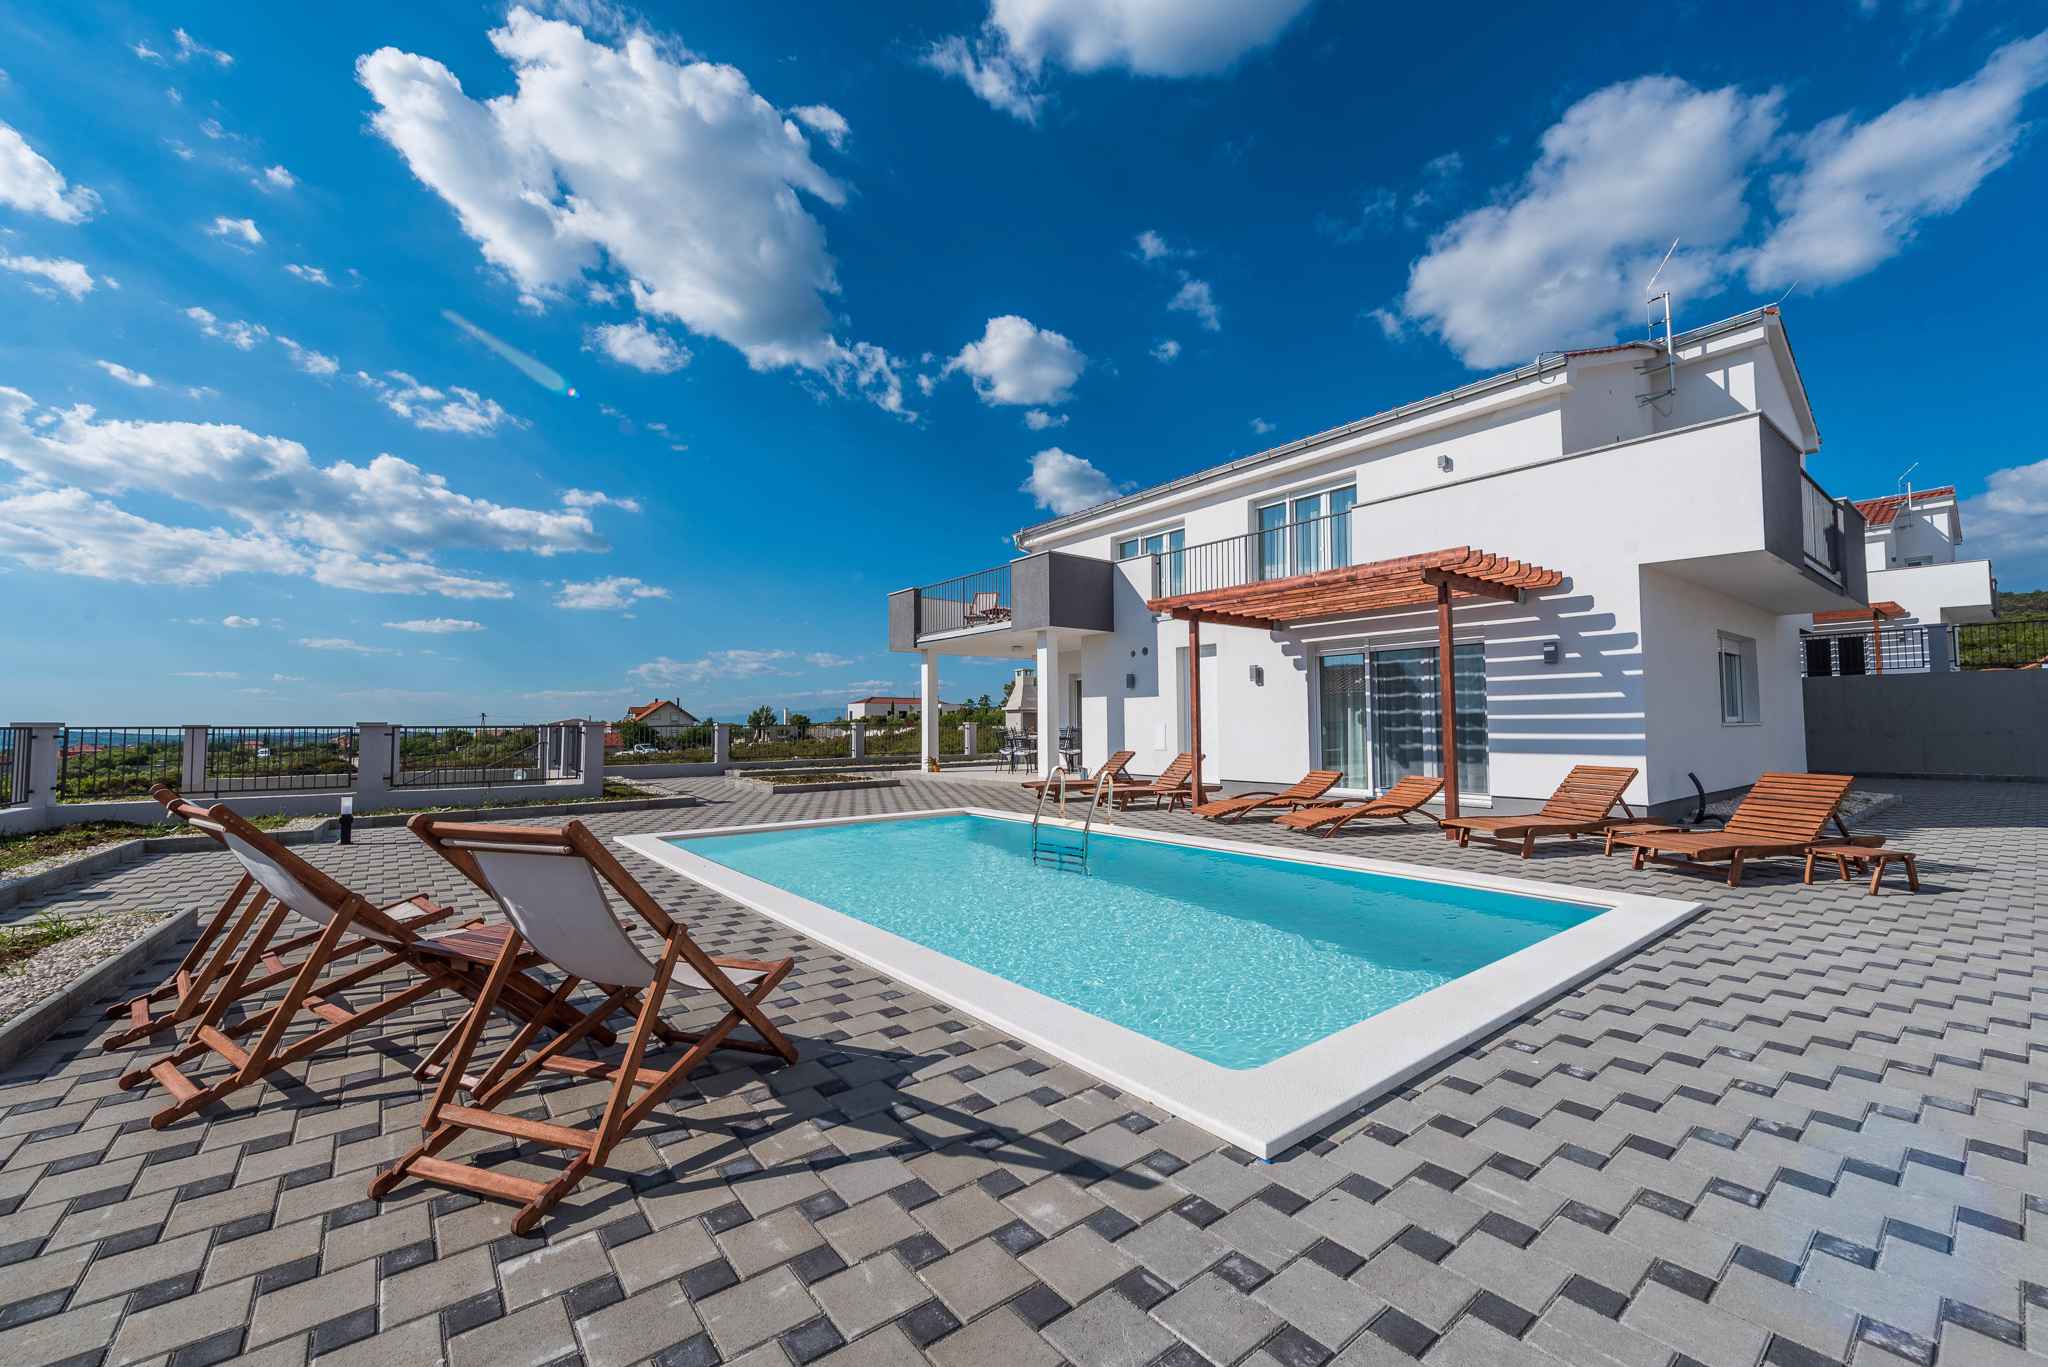 Villa mit Pool und WLAN Ferienhaus in Kroatien